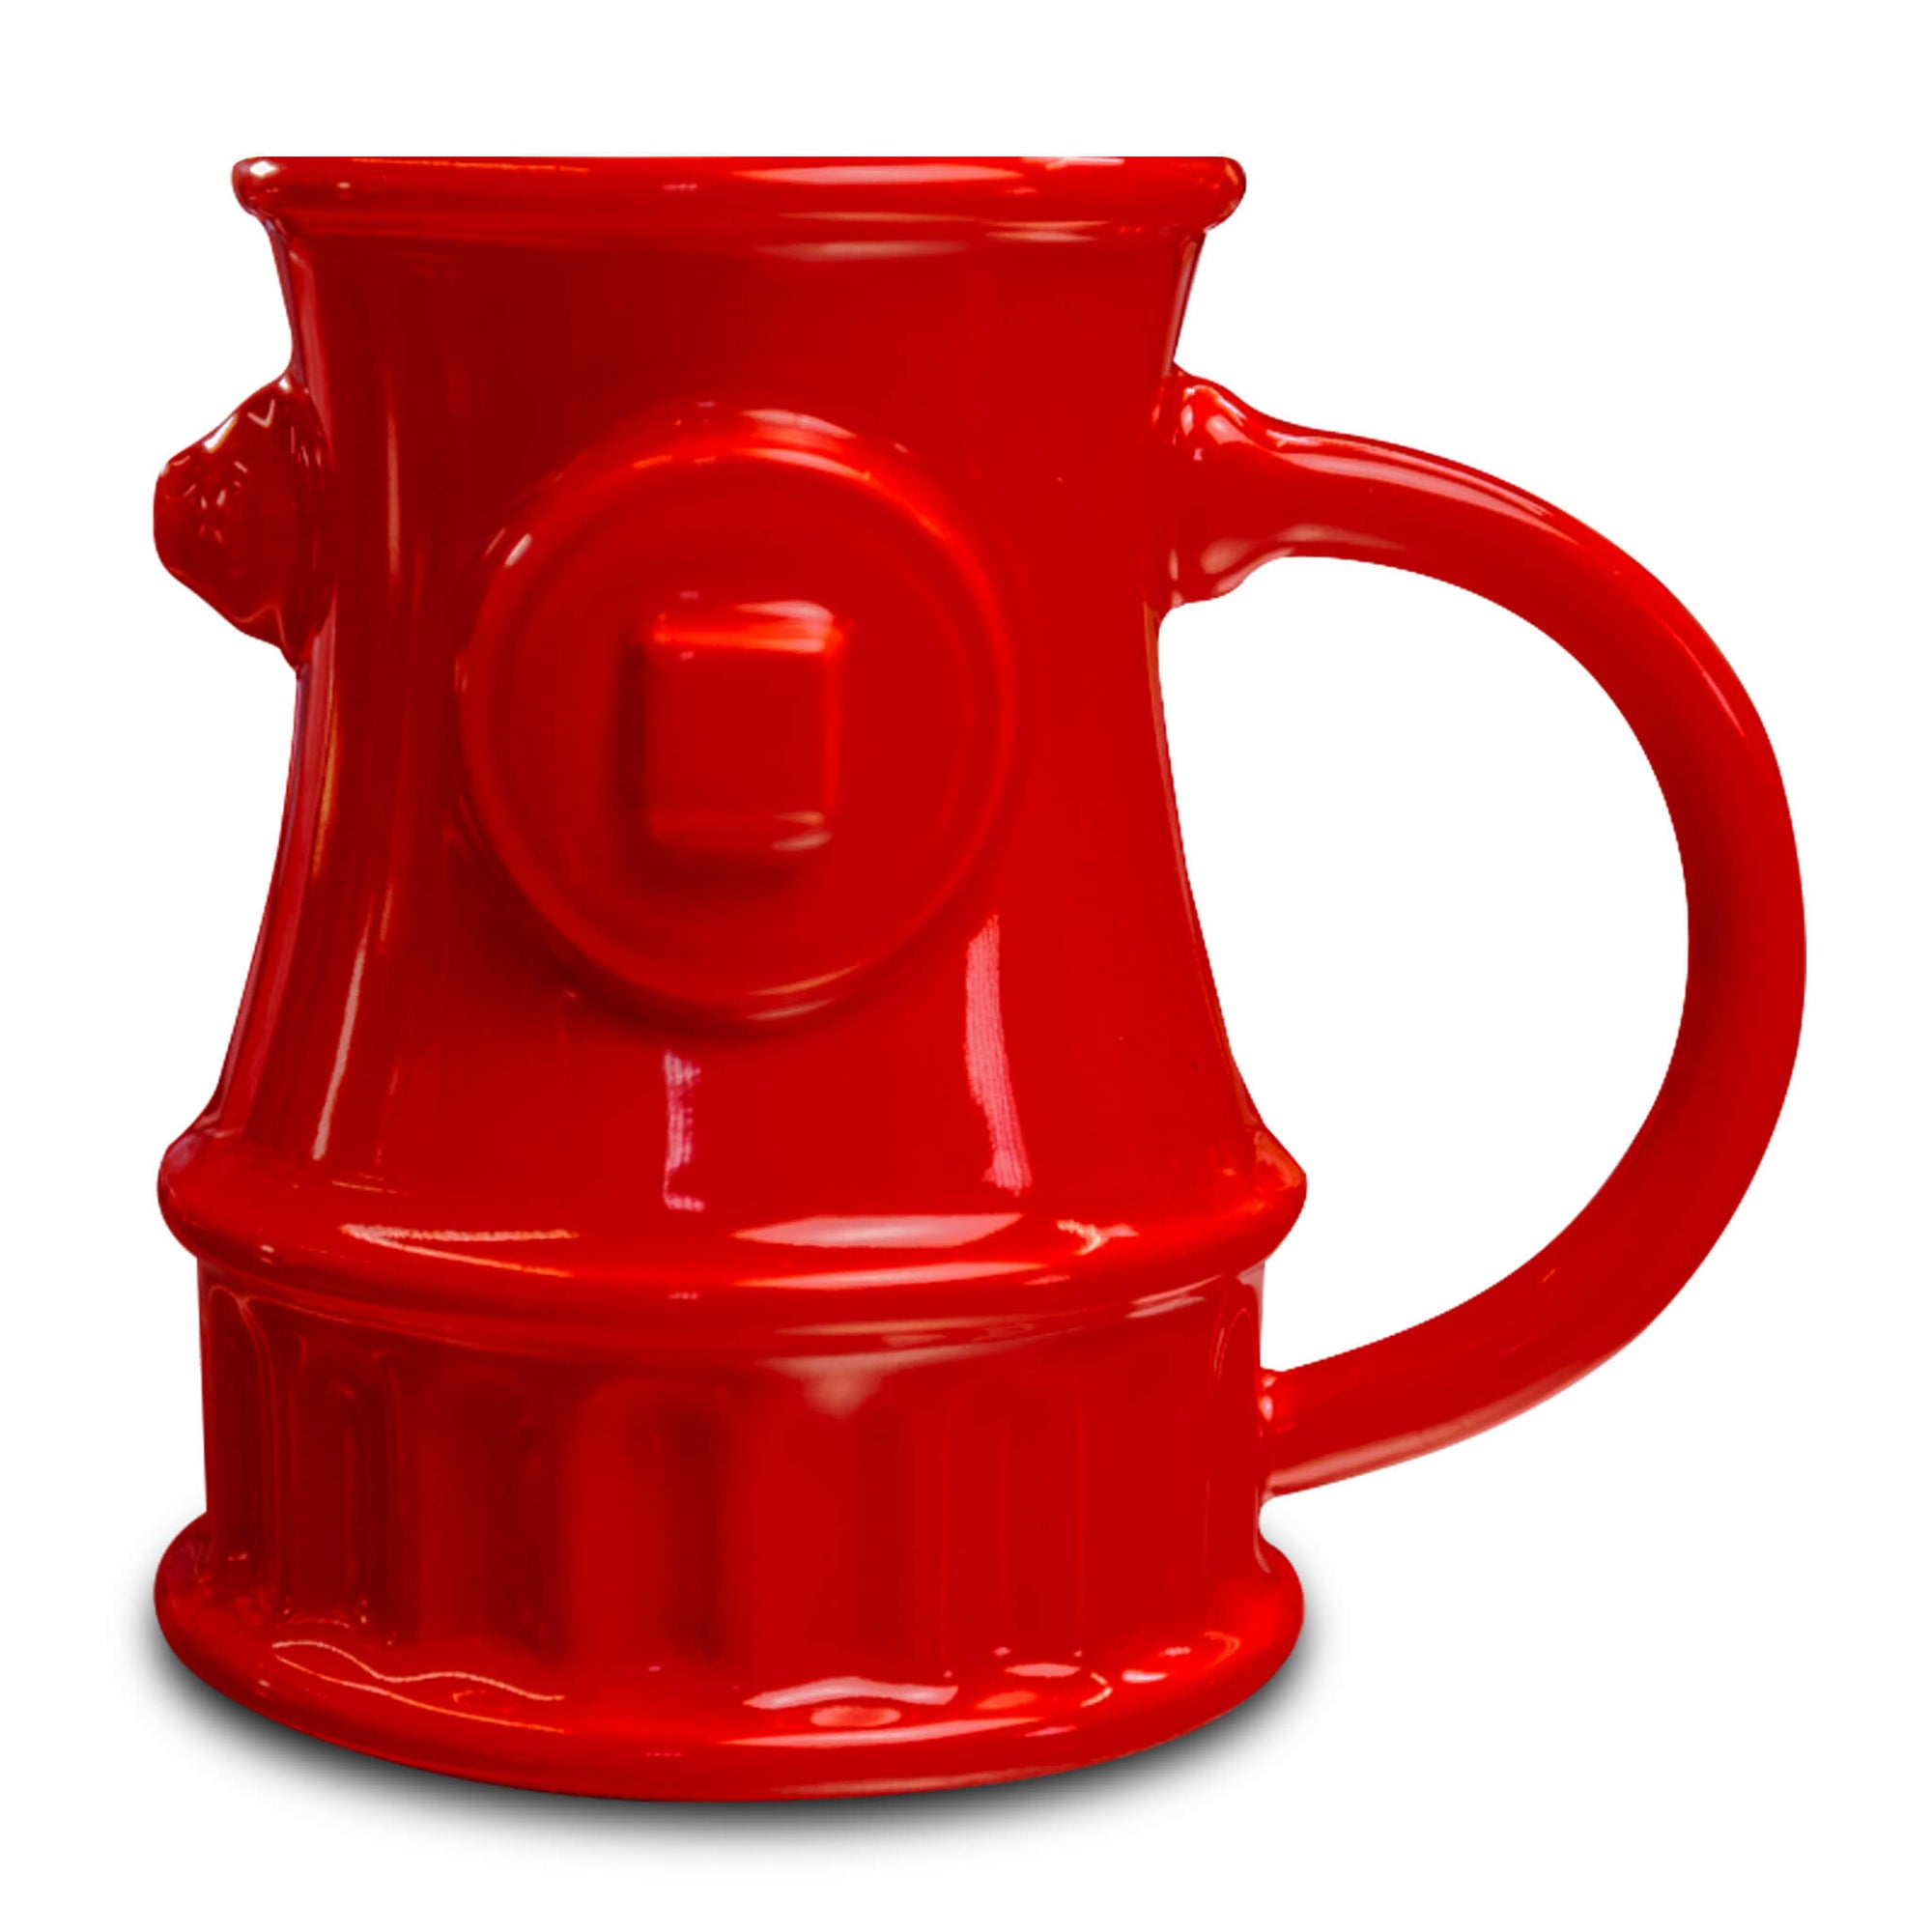 A red coffee mug shaped like a fire hydrant.